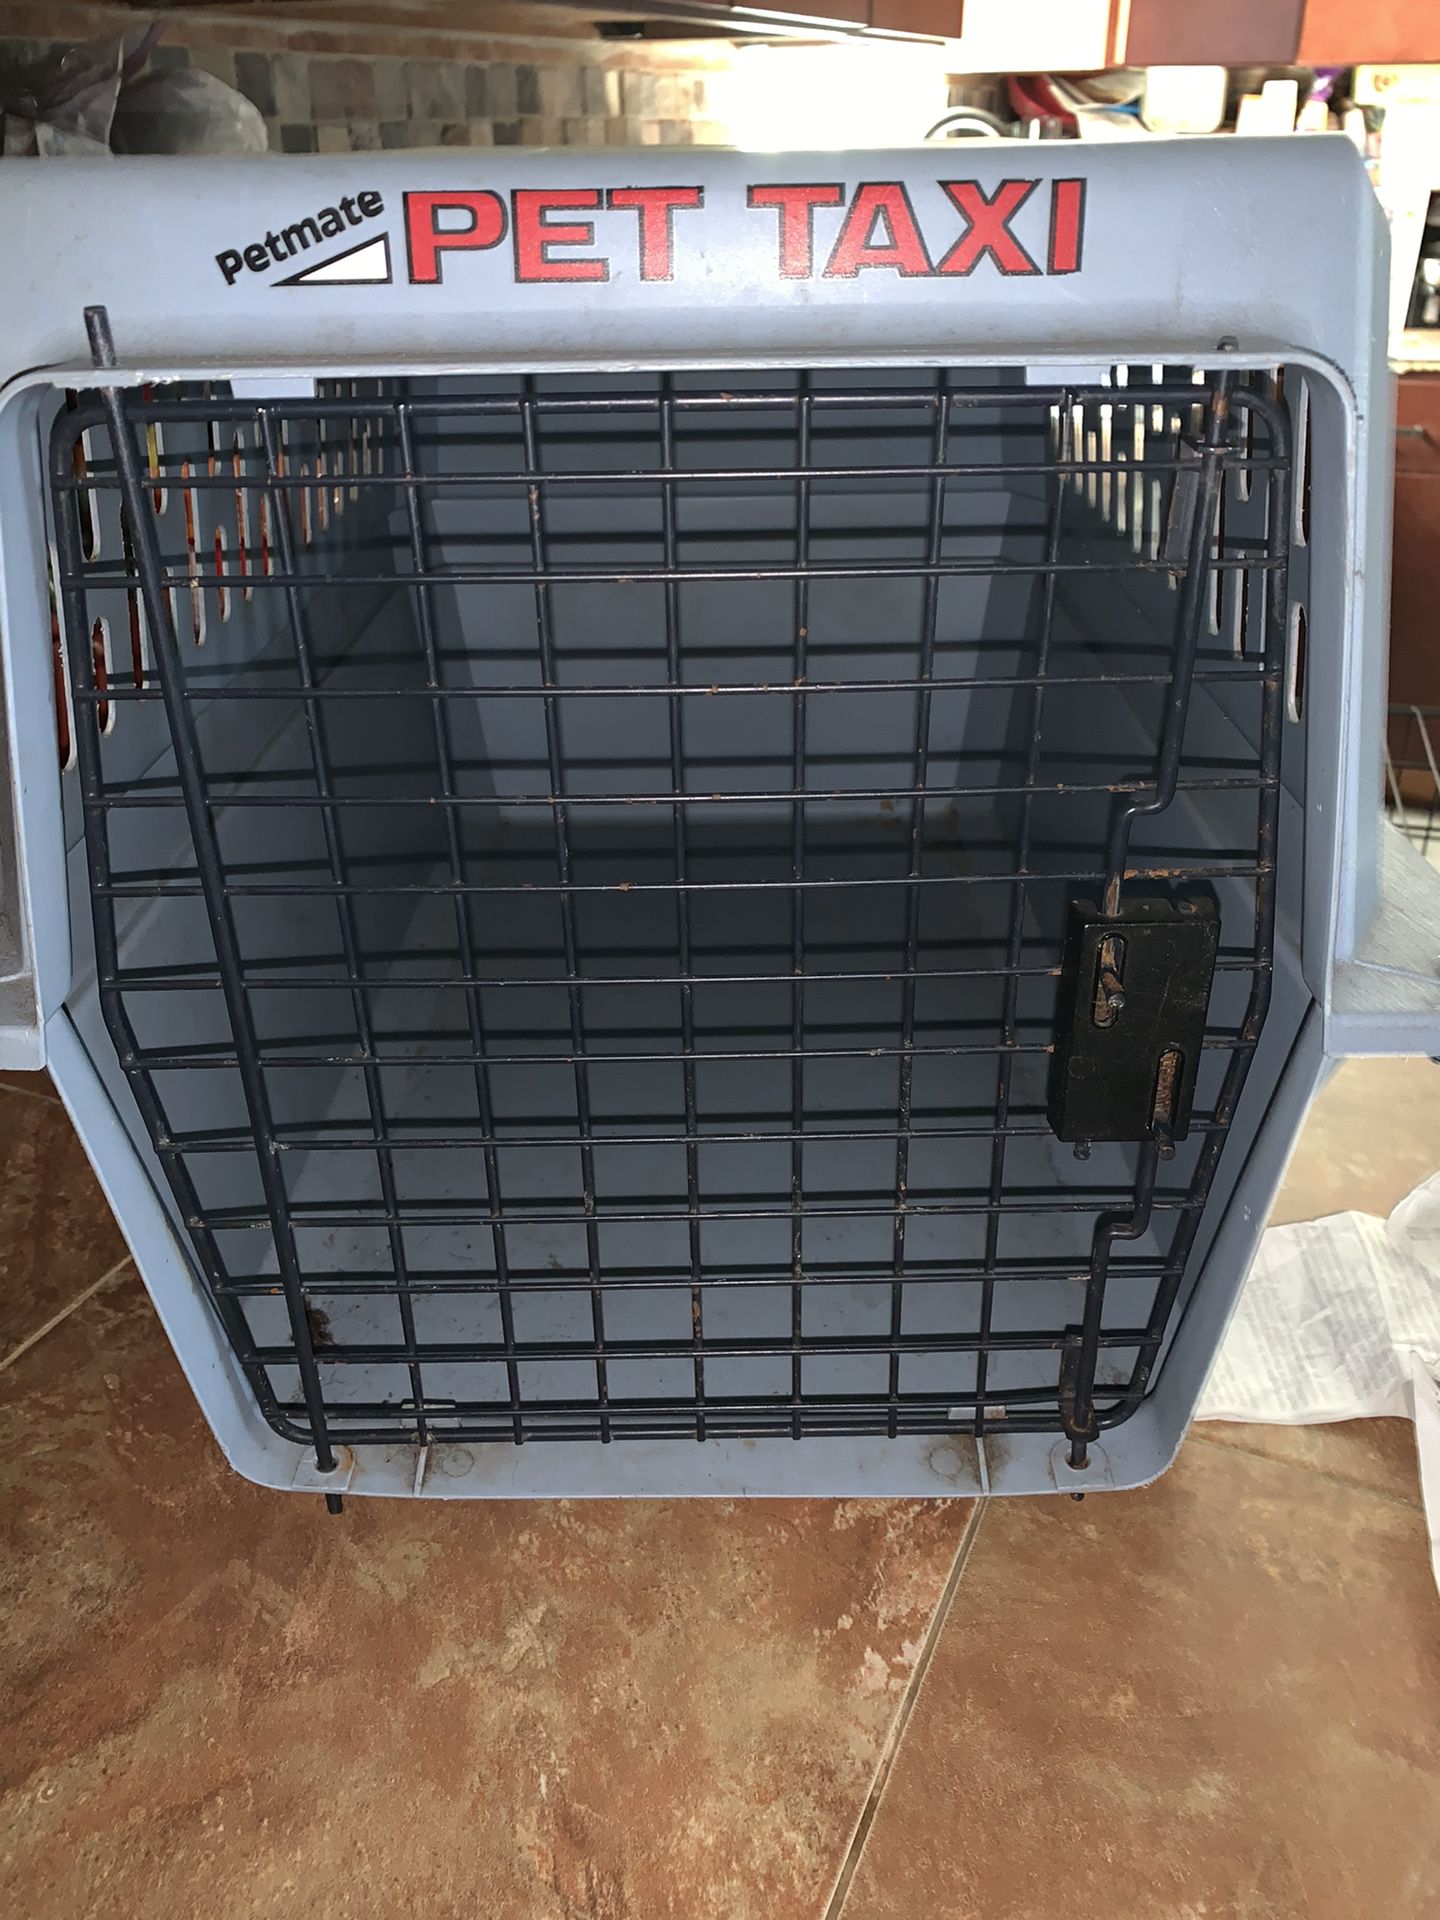 Pet taxi/crate